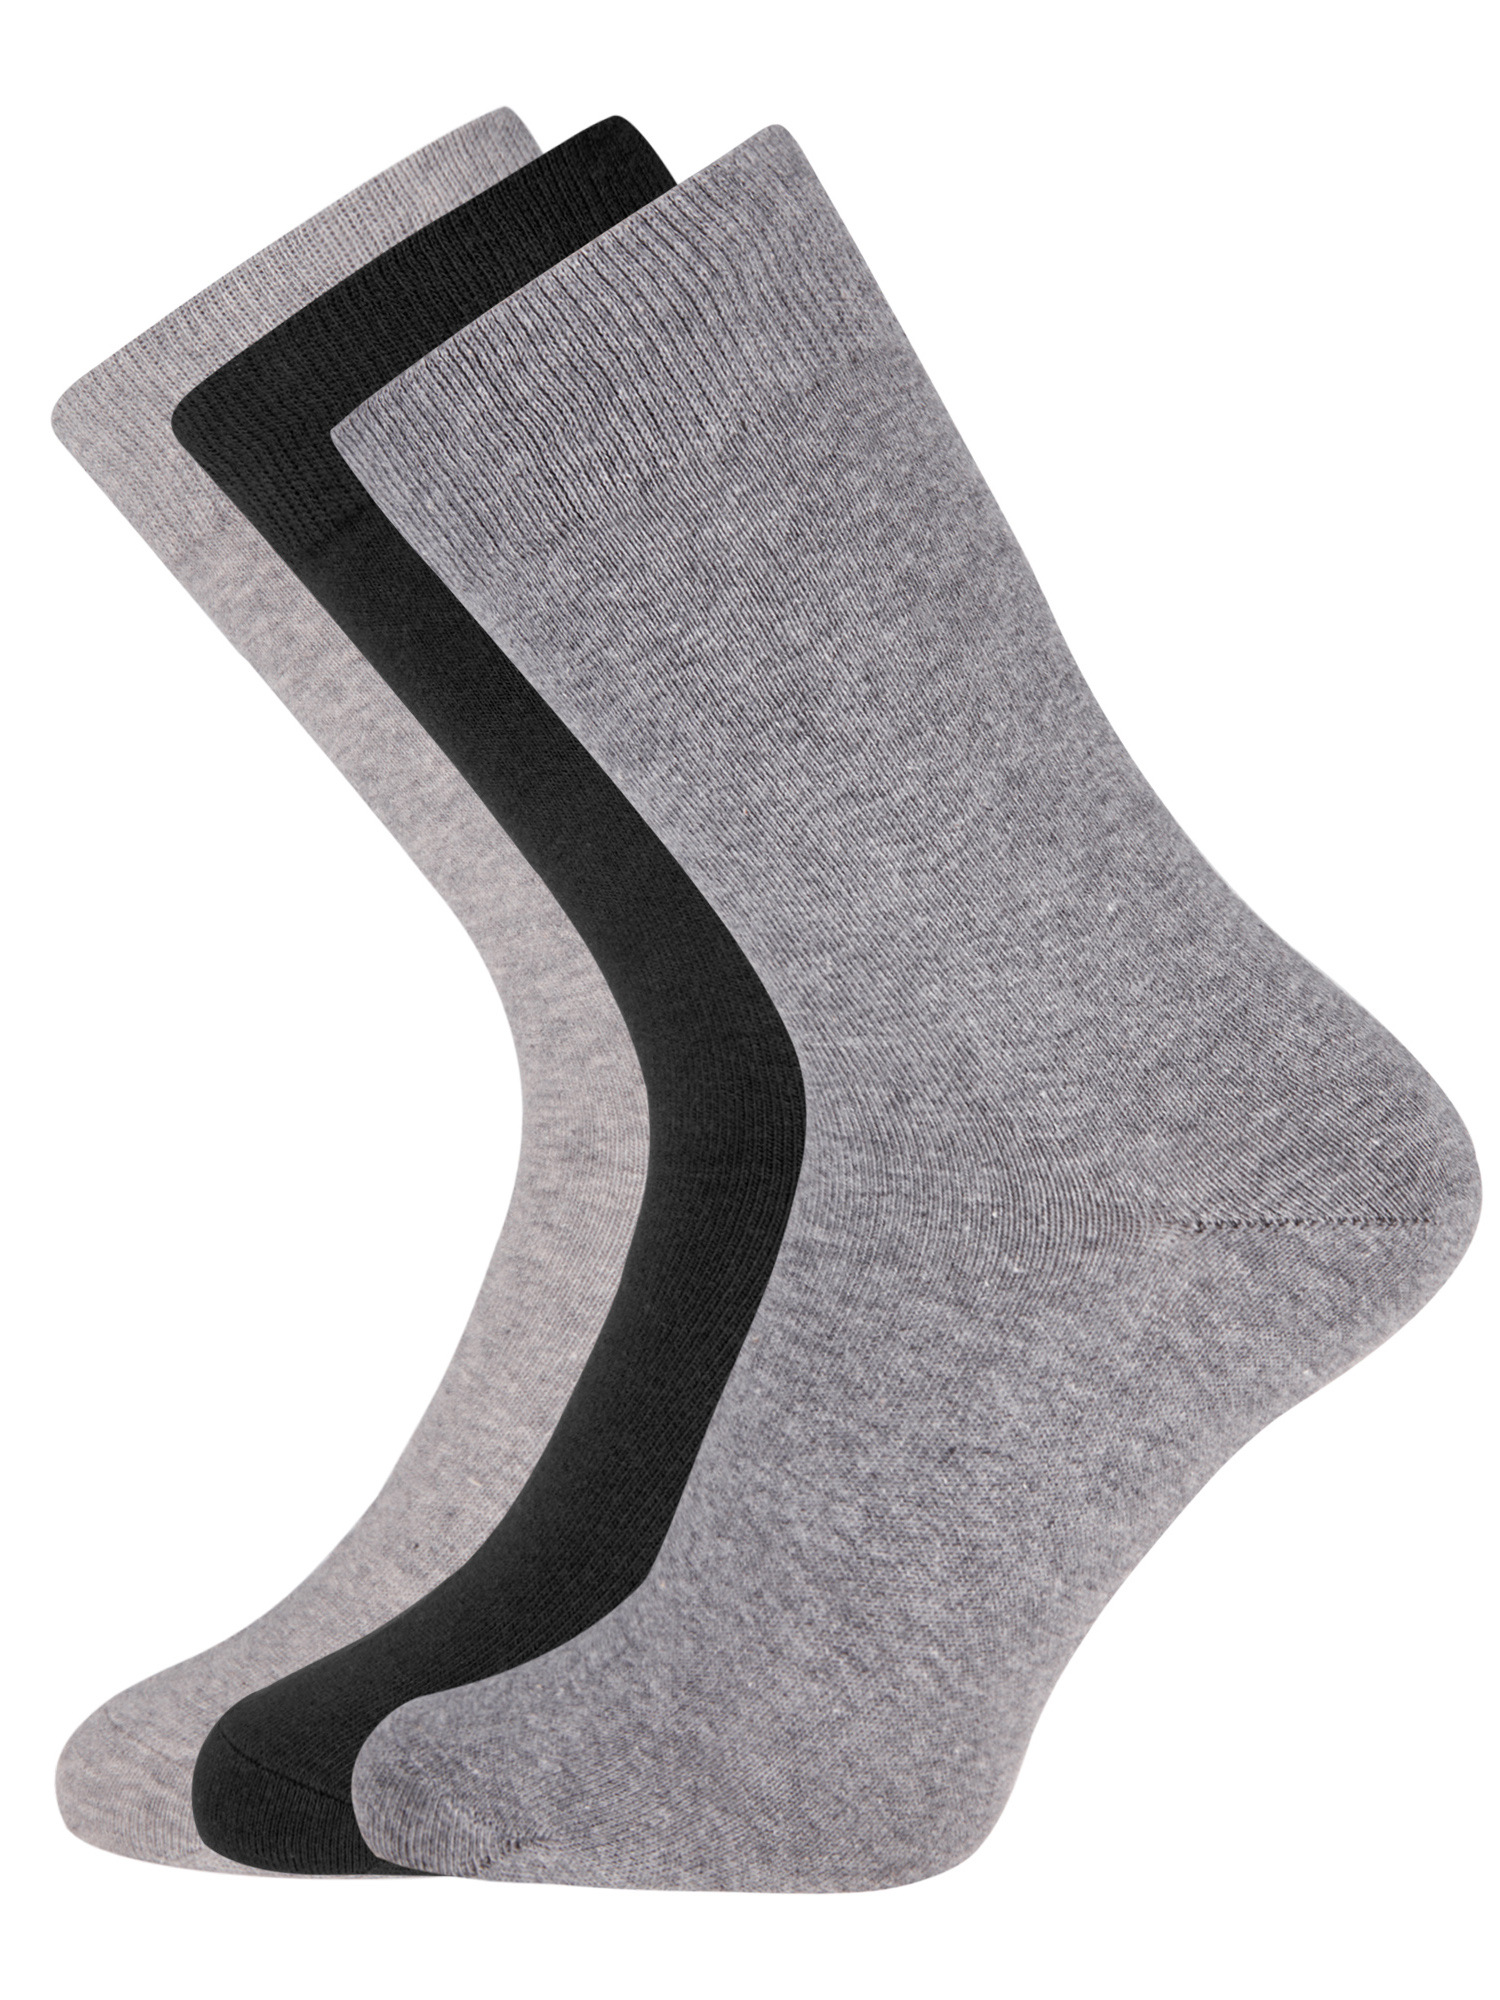 Комплект носков мужских oodji 7B233001T3 разноцветных 44-47